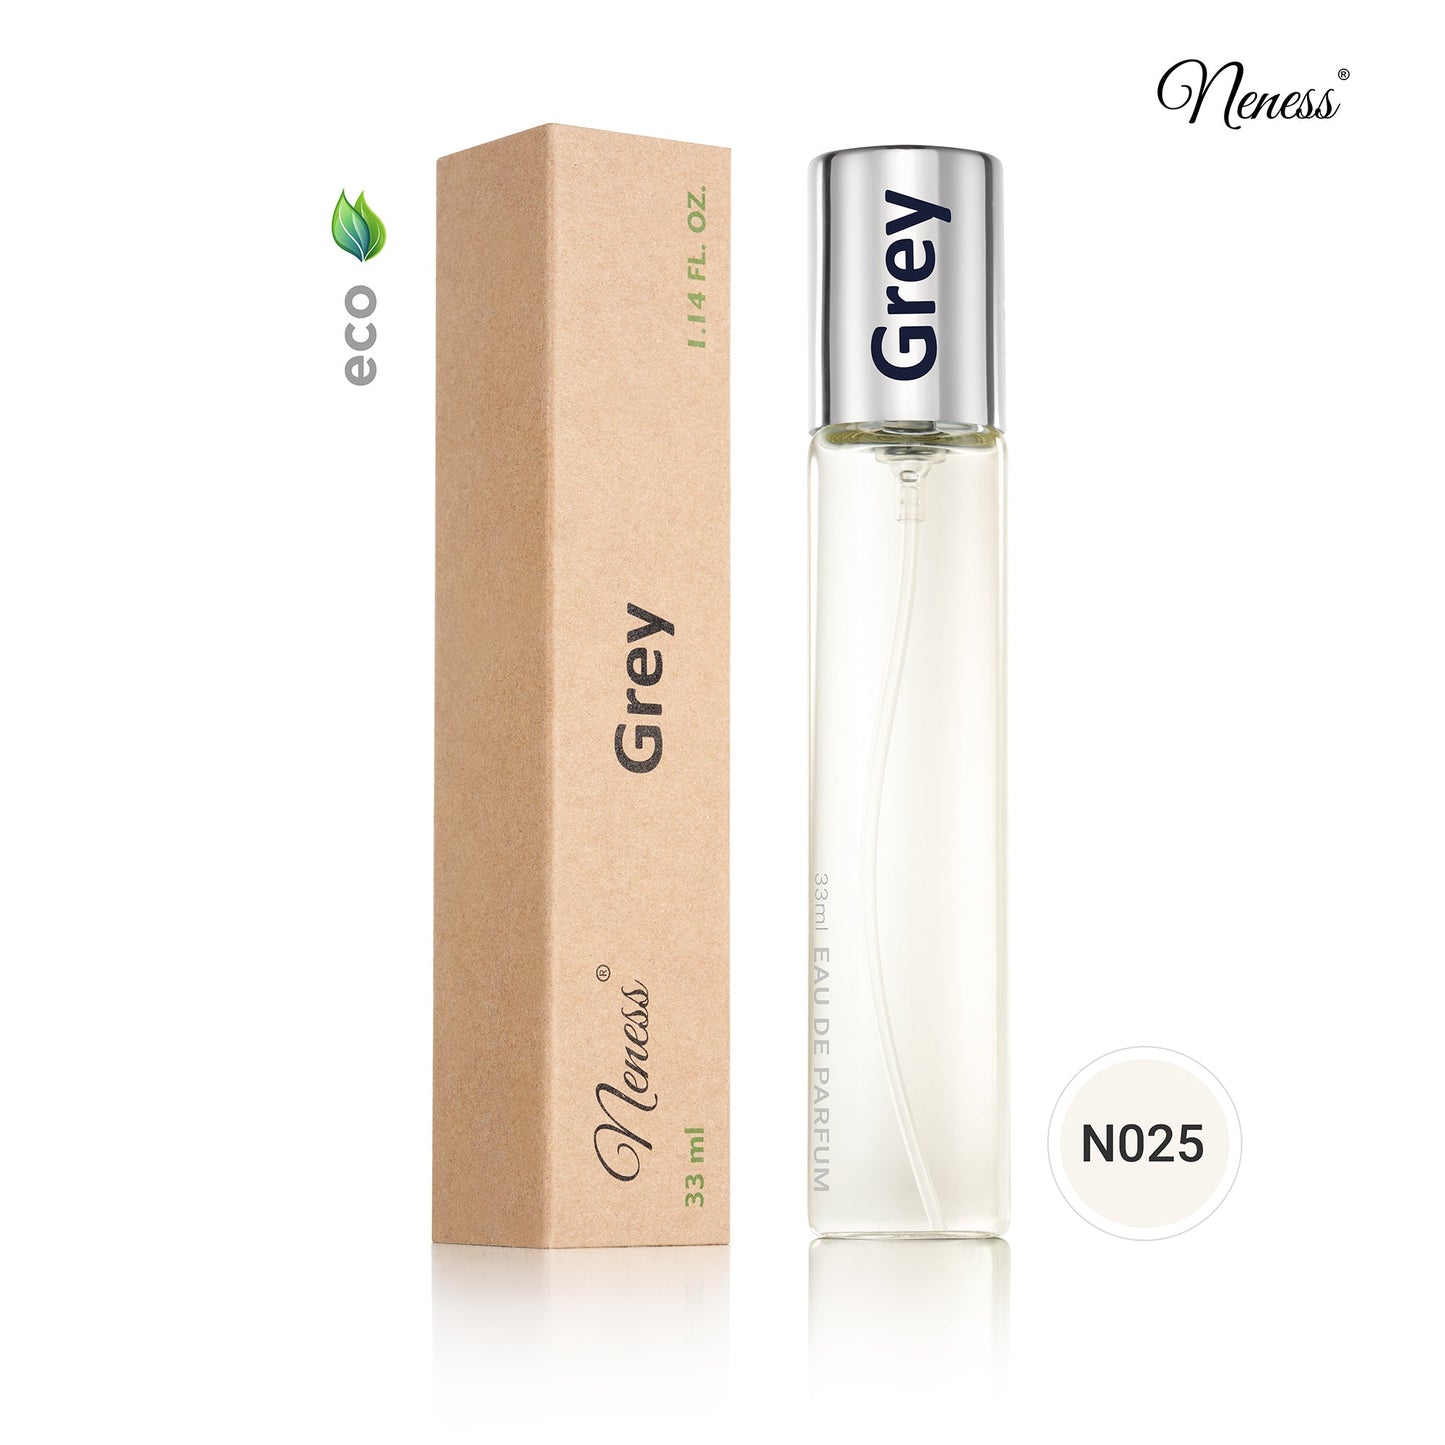 N025. Neness Grey - 33 ml - Parfums voor mannen